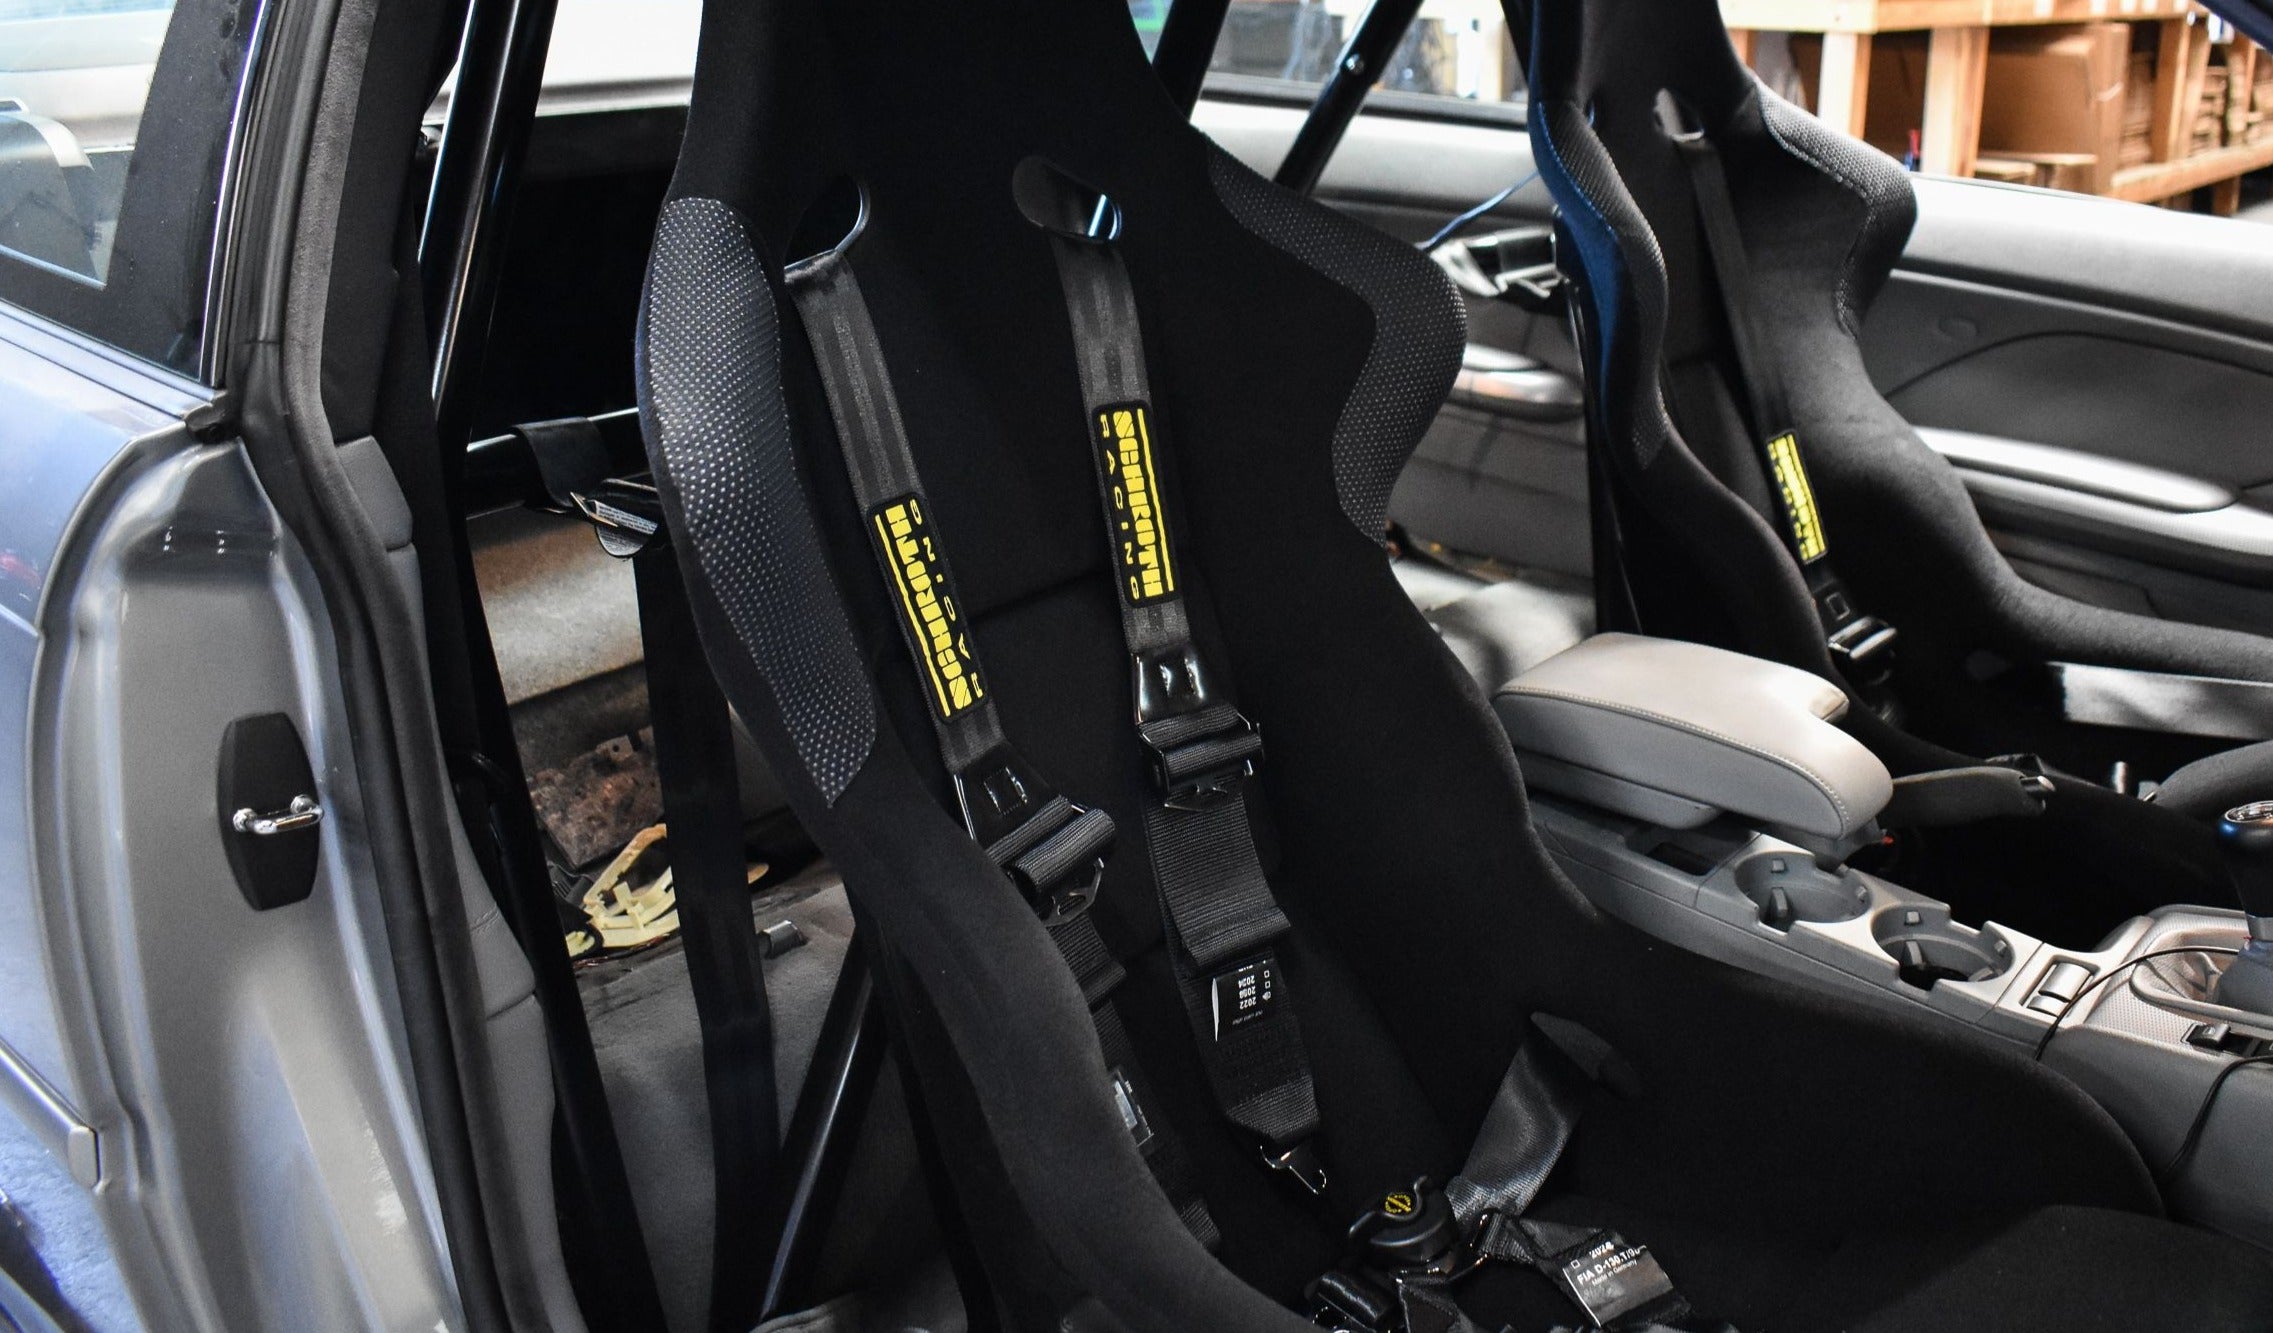 Recaro - Profi SPG Fixed-Back Racing Seat